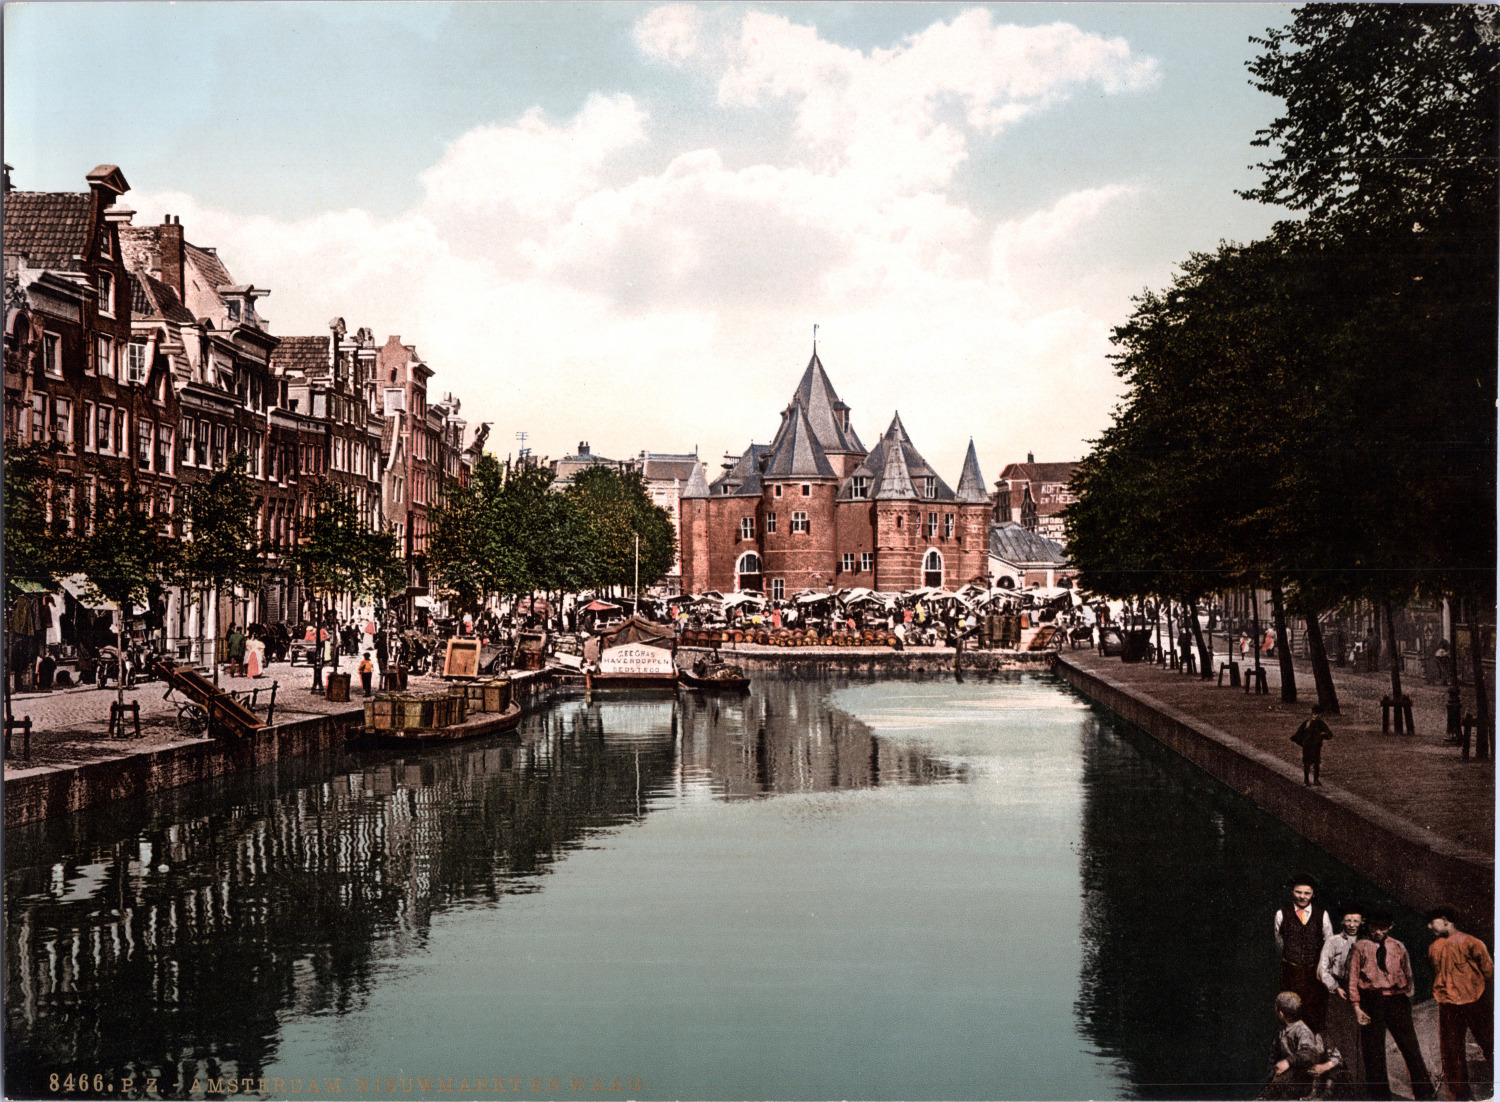 Nederland, Amsterdam. Nieuwmarkt en Libra. vintage print photochromie, vintage 